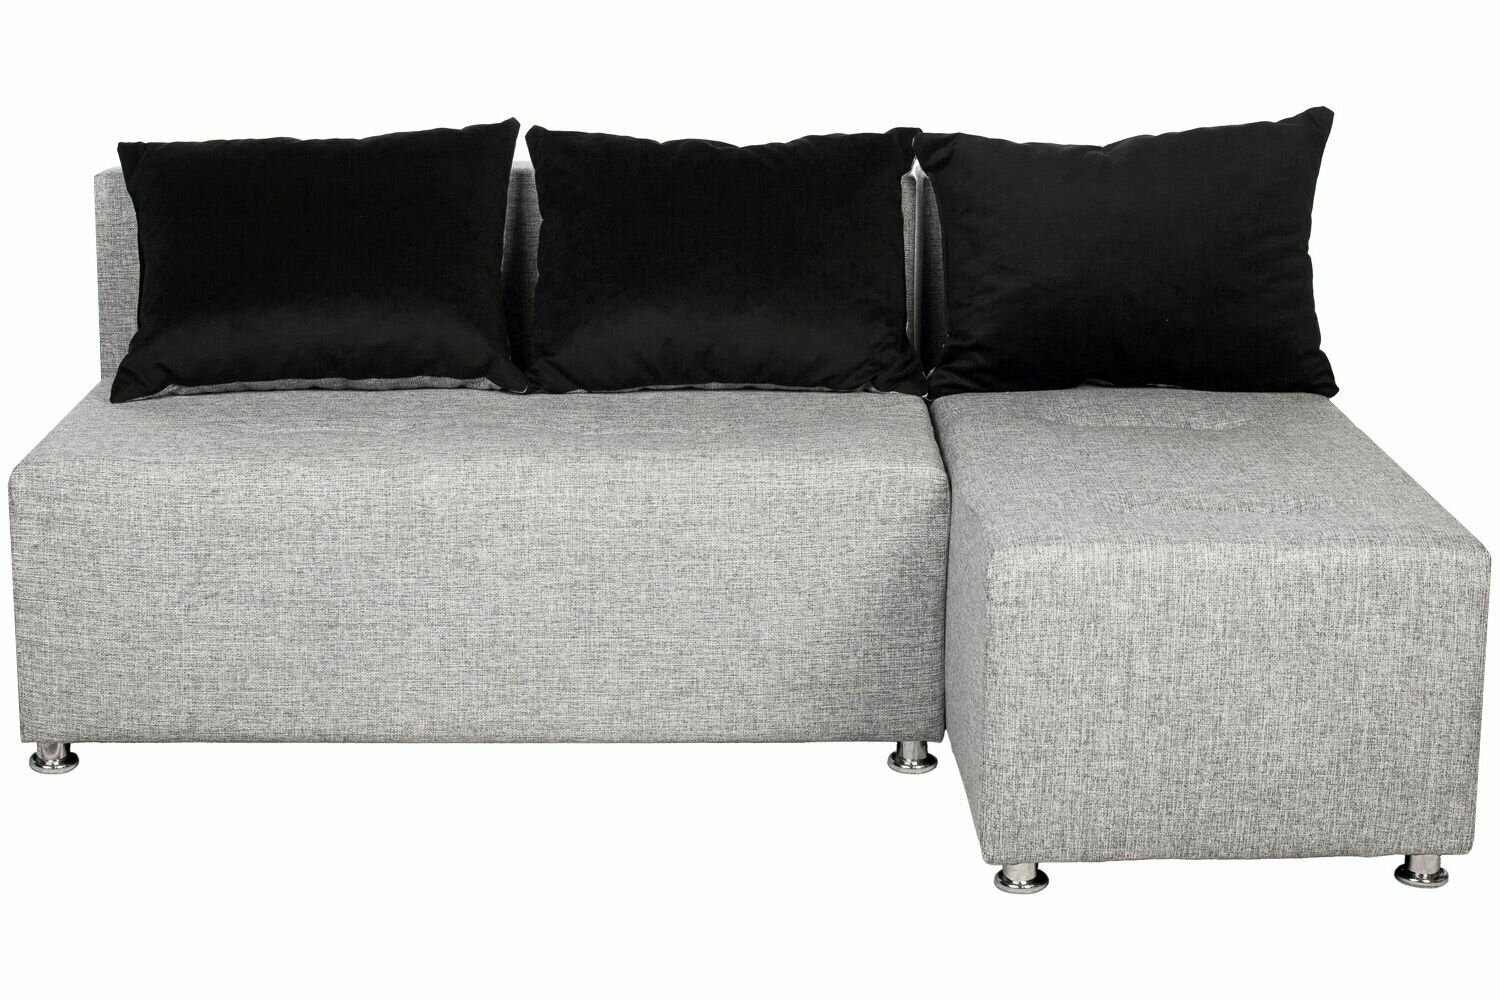 Угловой диван-кровать Комо еврокнижка серая рогожка/подушки вельвет черный, правый угол